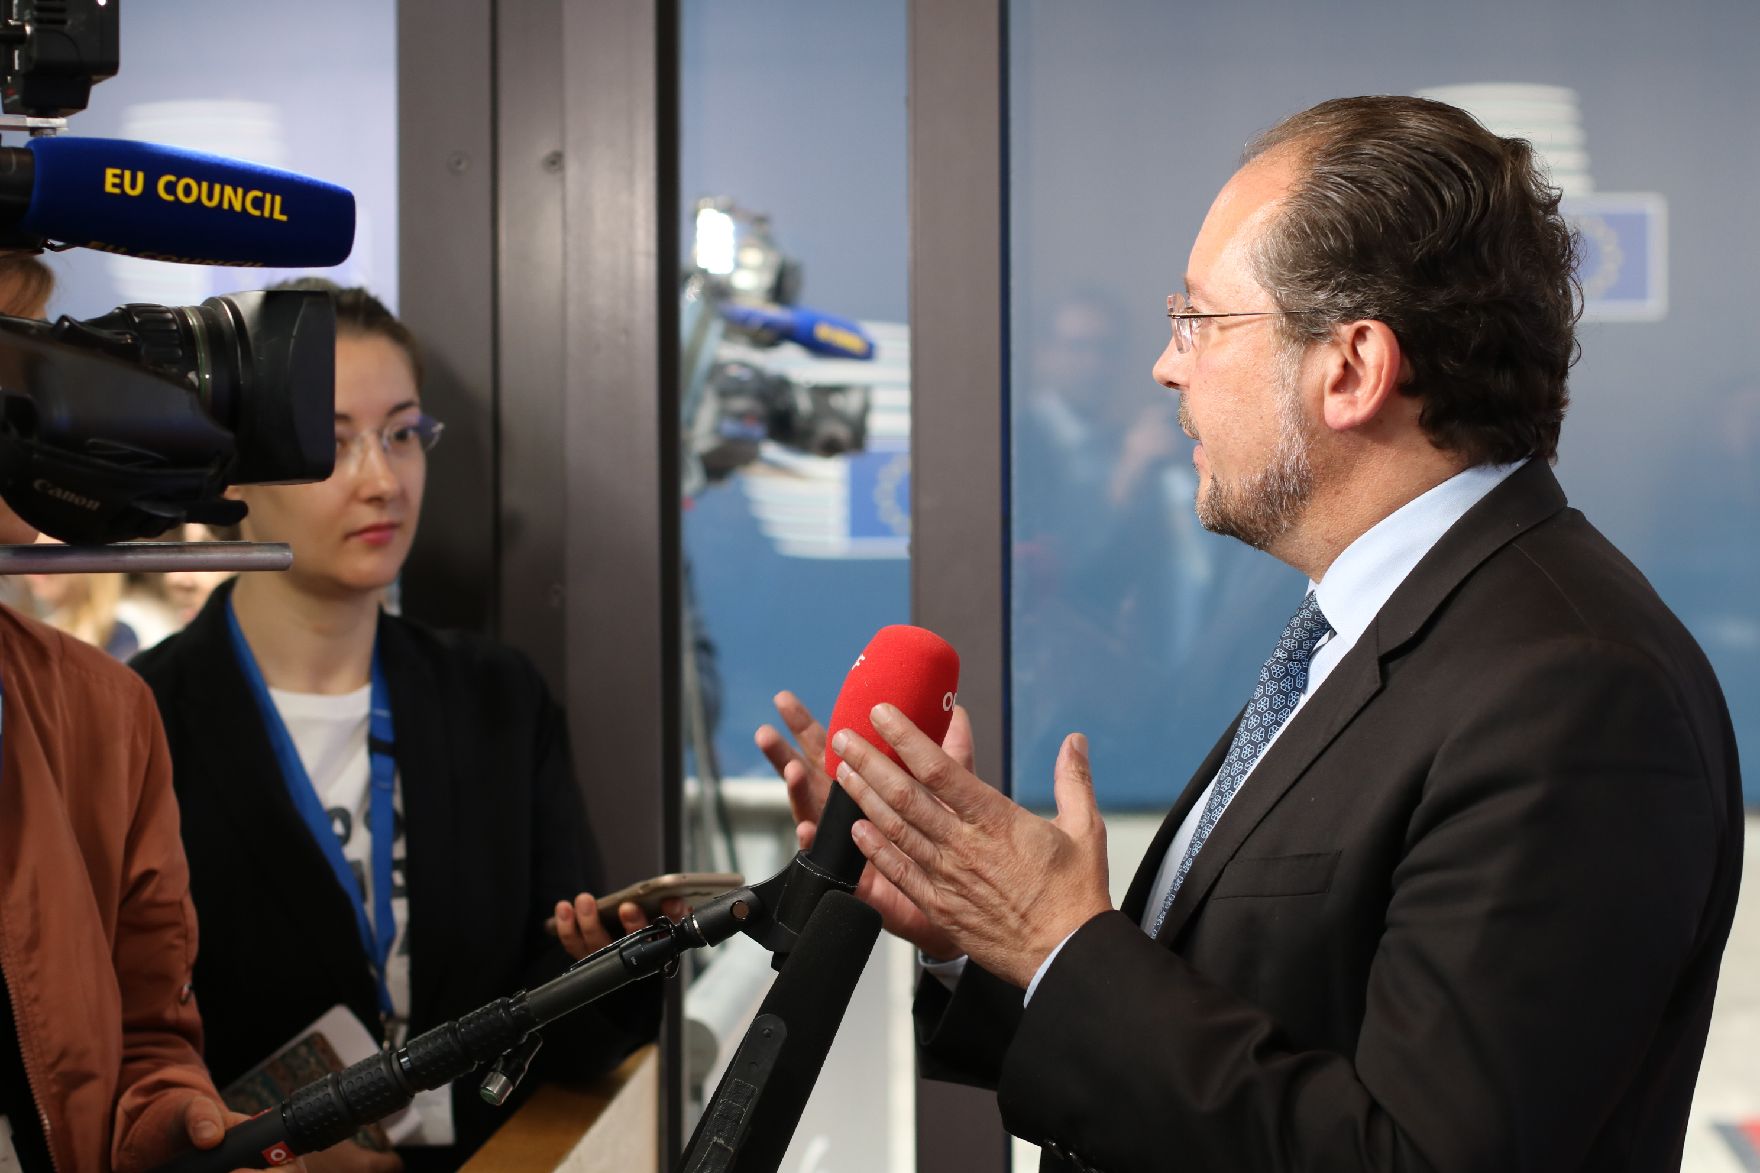 Am 16. September 2019 nahm Bundesminister Alexander Schallenberg (r.) am Europäischen Rat in Brüssel teil. Im Bild beim Doorstep.